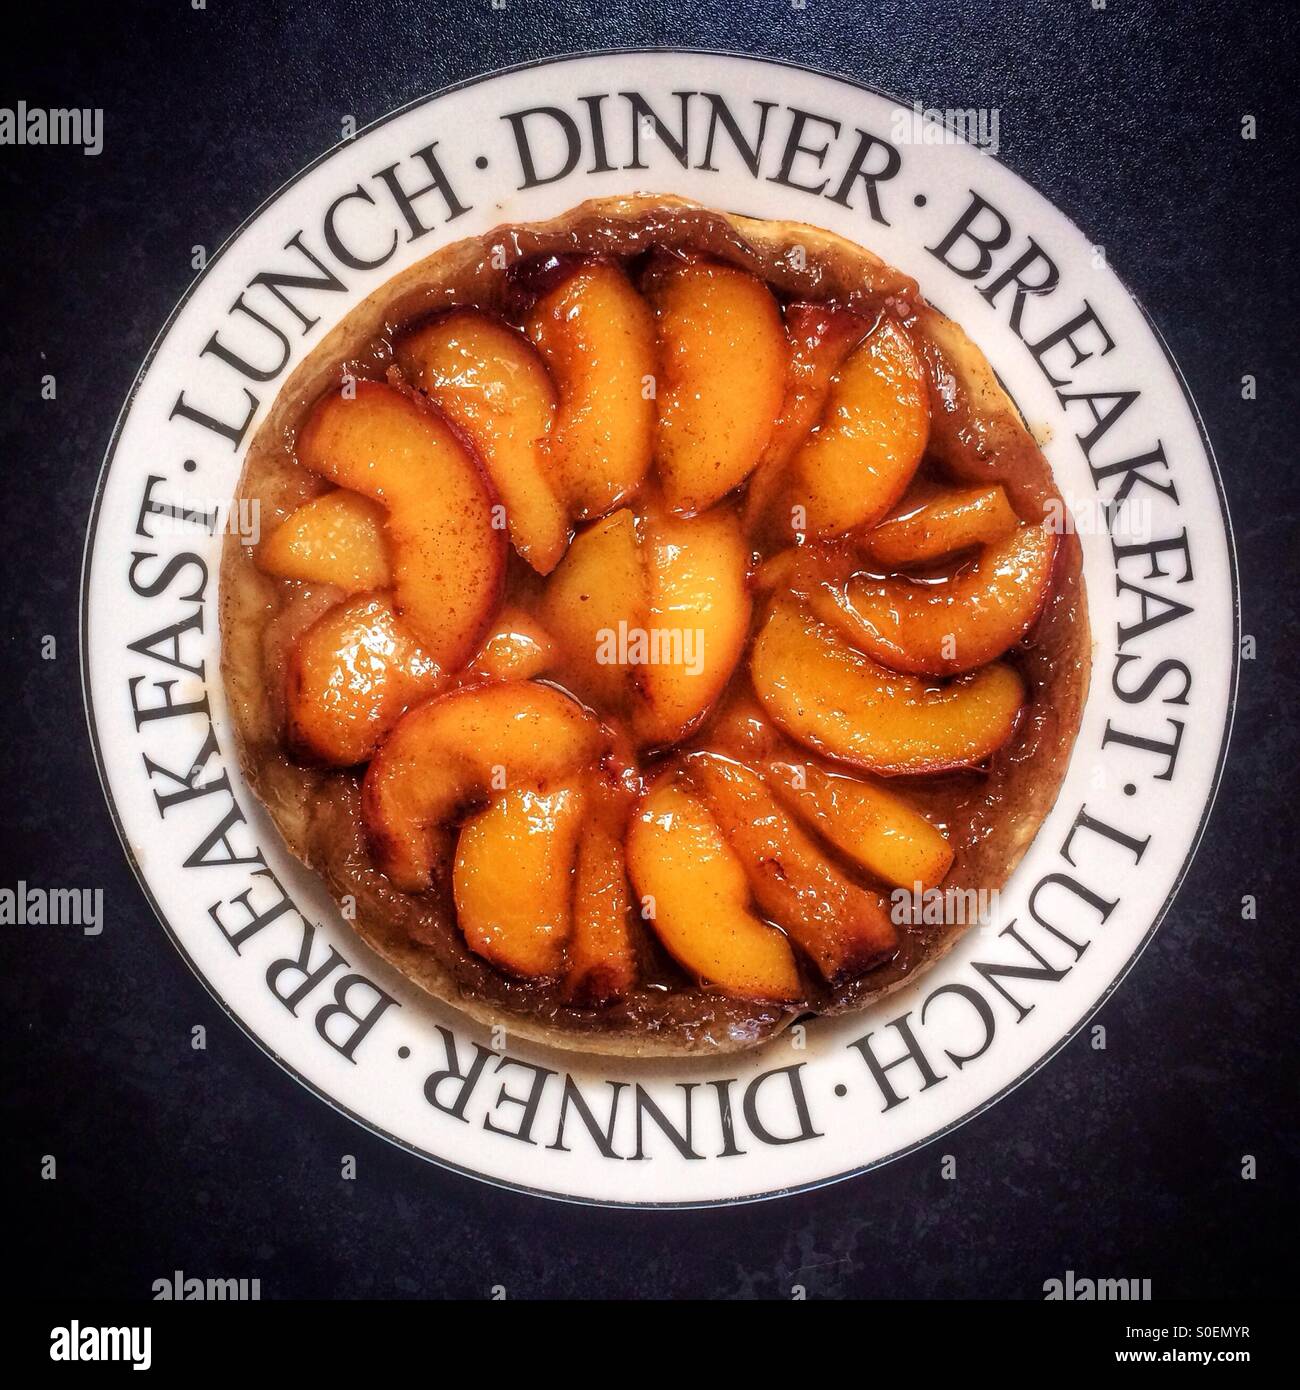 Pfirsich-Tarte Tatin auf einem weißen Teller dekoriert mit den Worten Frühstück, Mittag- und Abendessen gegen einen schwarzen Hintergrund. Stockfoto